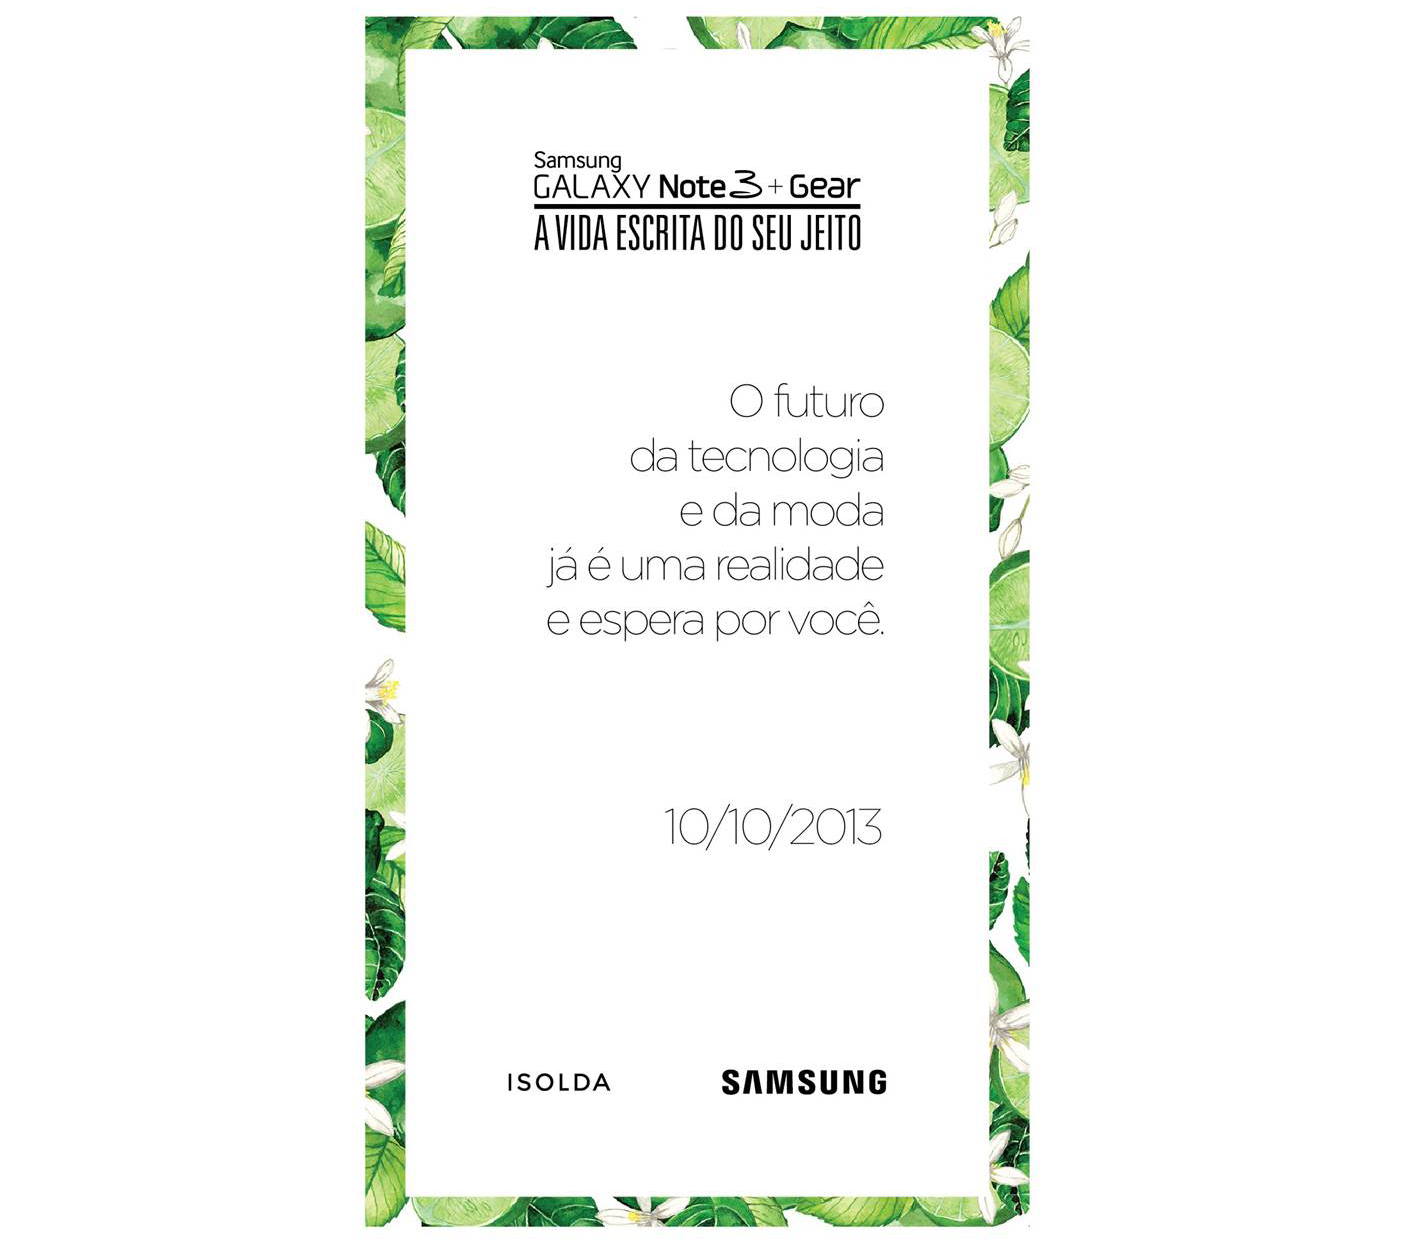 Isso foi rápido: Galaxy Note 3 e Galaxy Gear serão lançados no Brasil no dia 10 de outubro